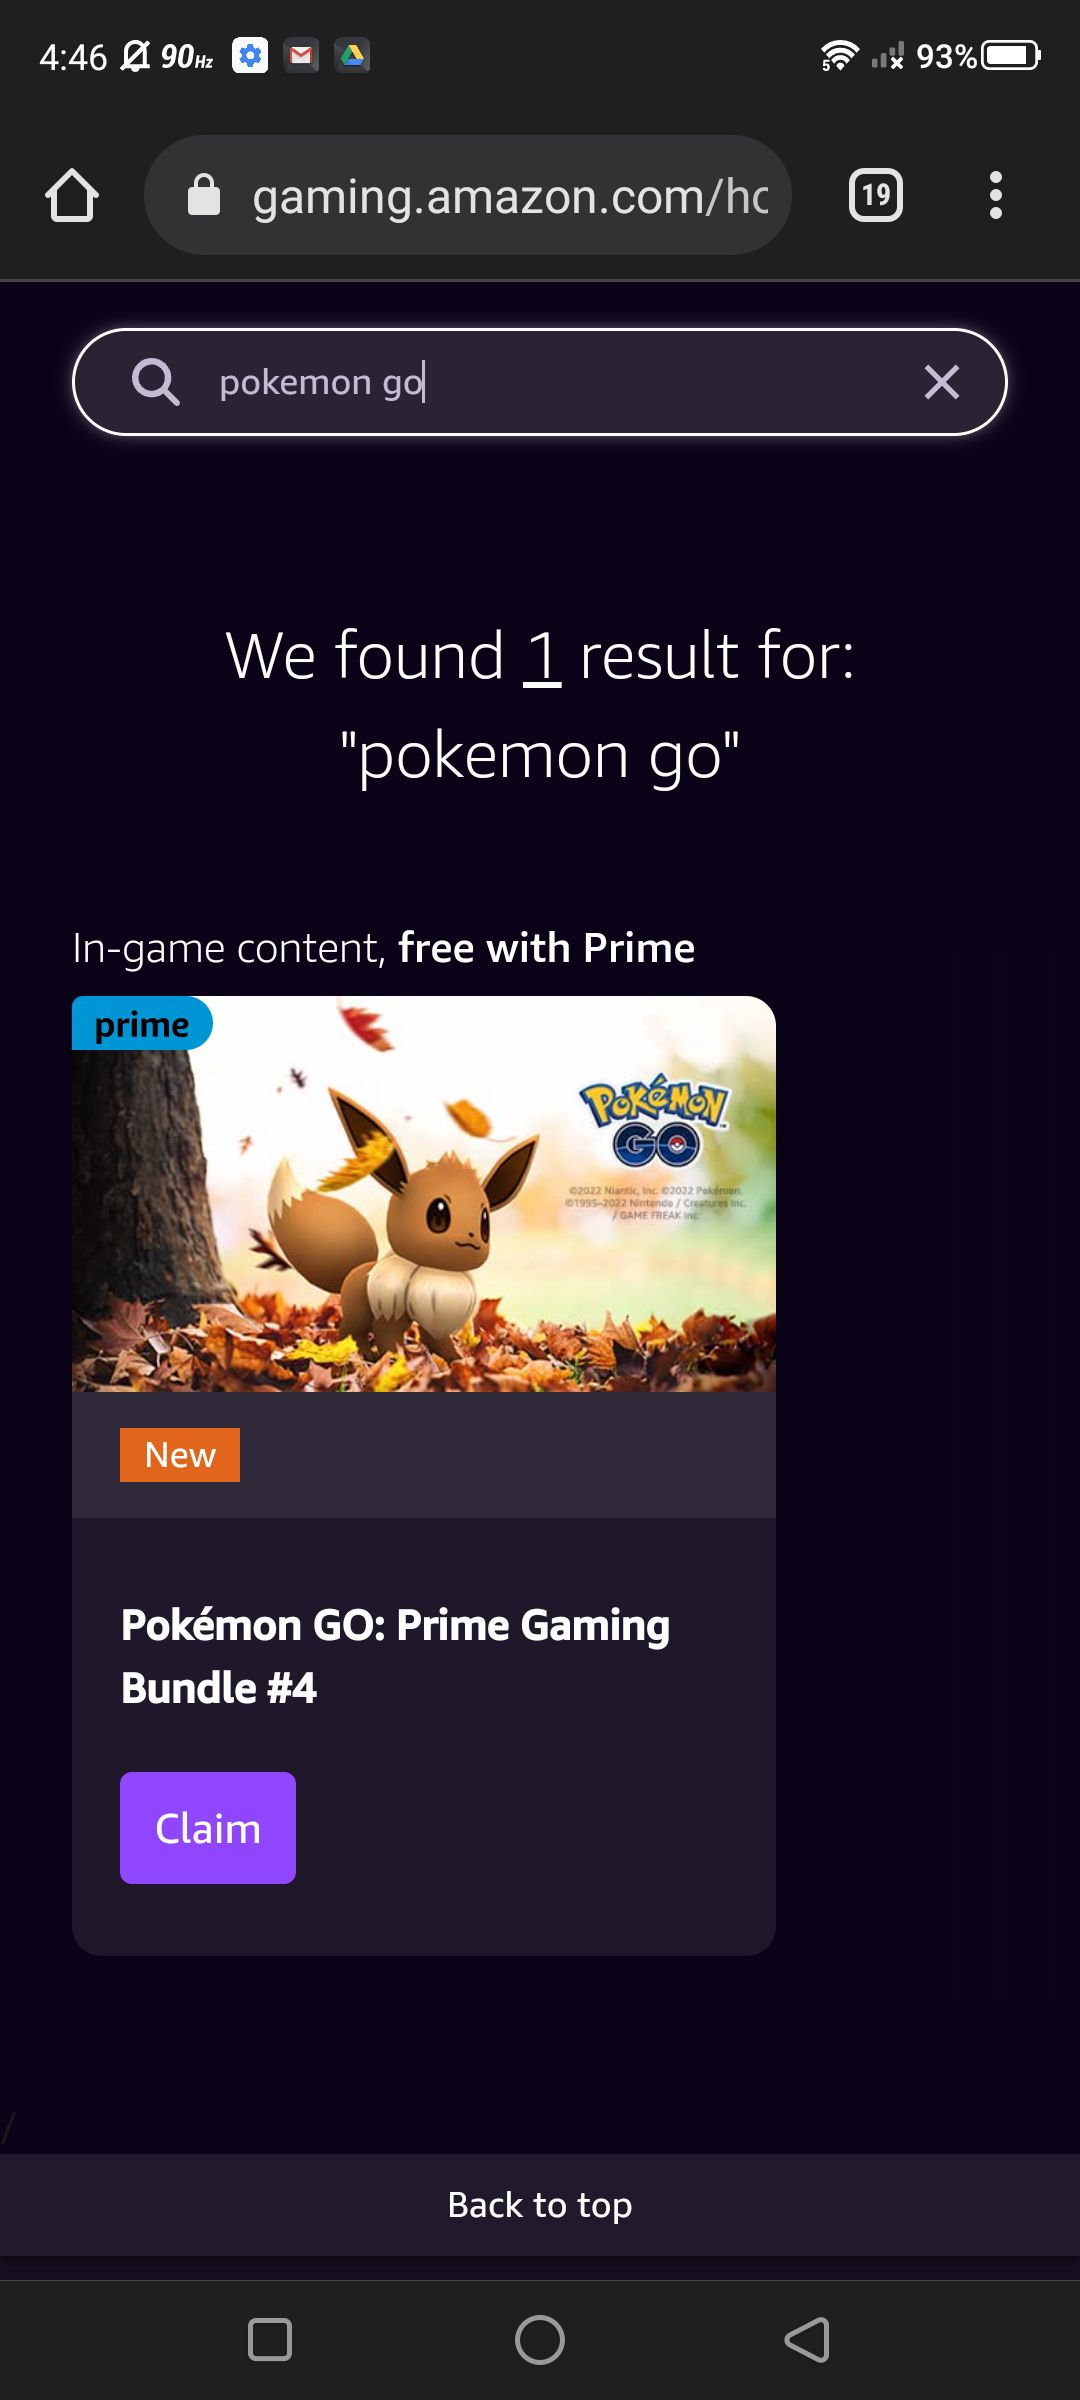 Captura de tela da adição de uma entrada na barra de pesquisa para Amazon Gaming (navegador da web móvel)